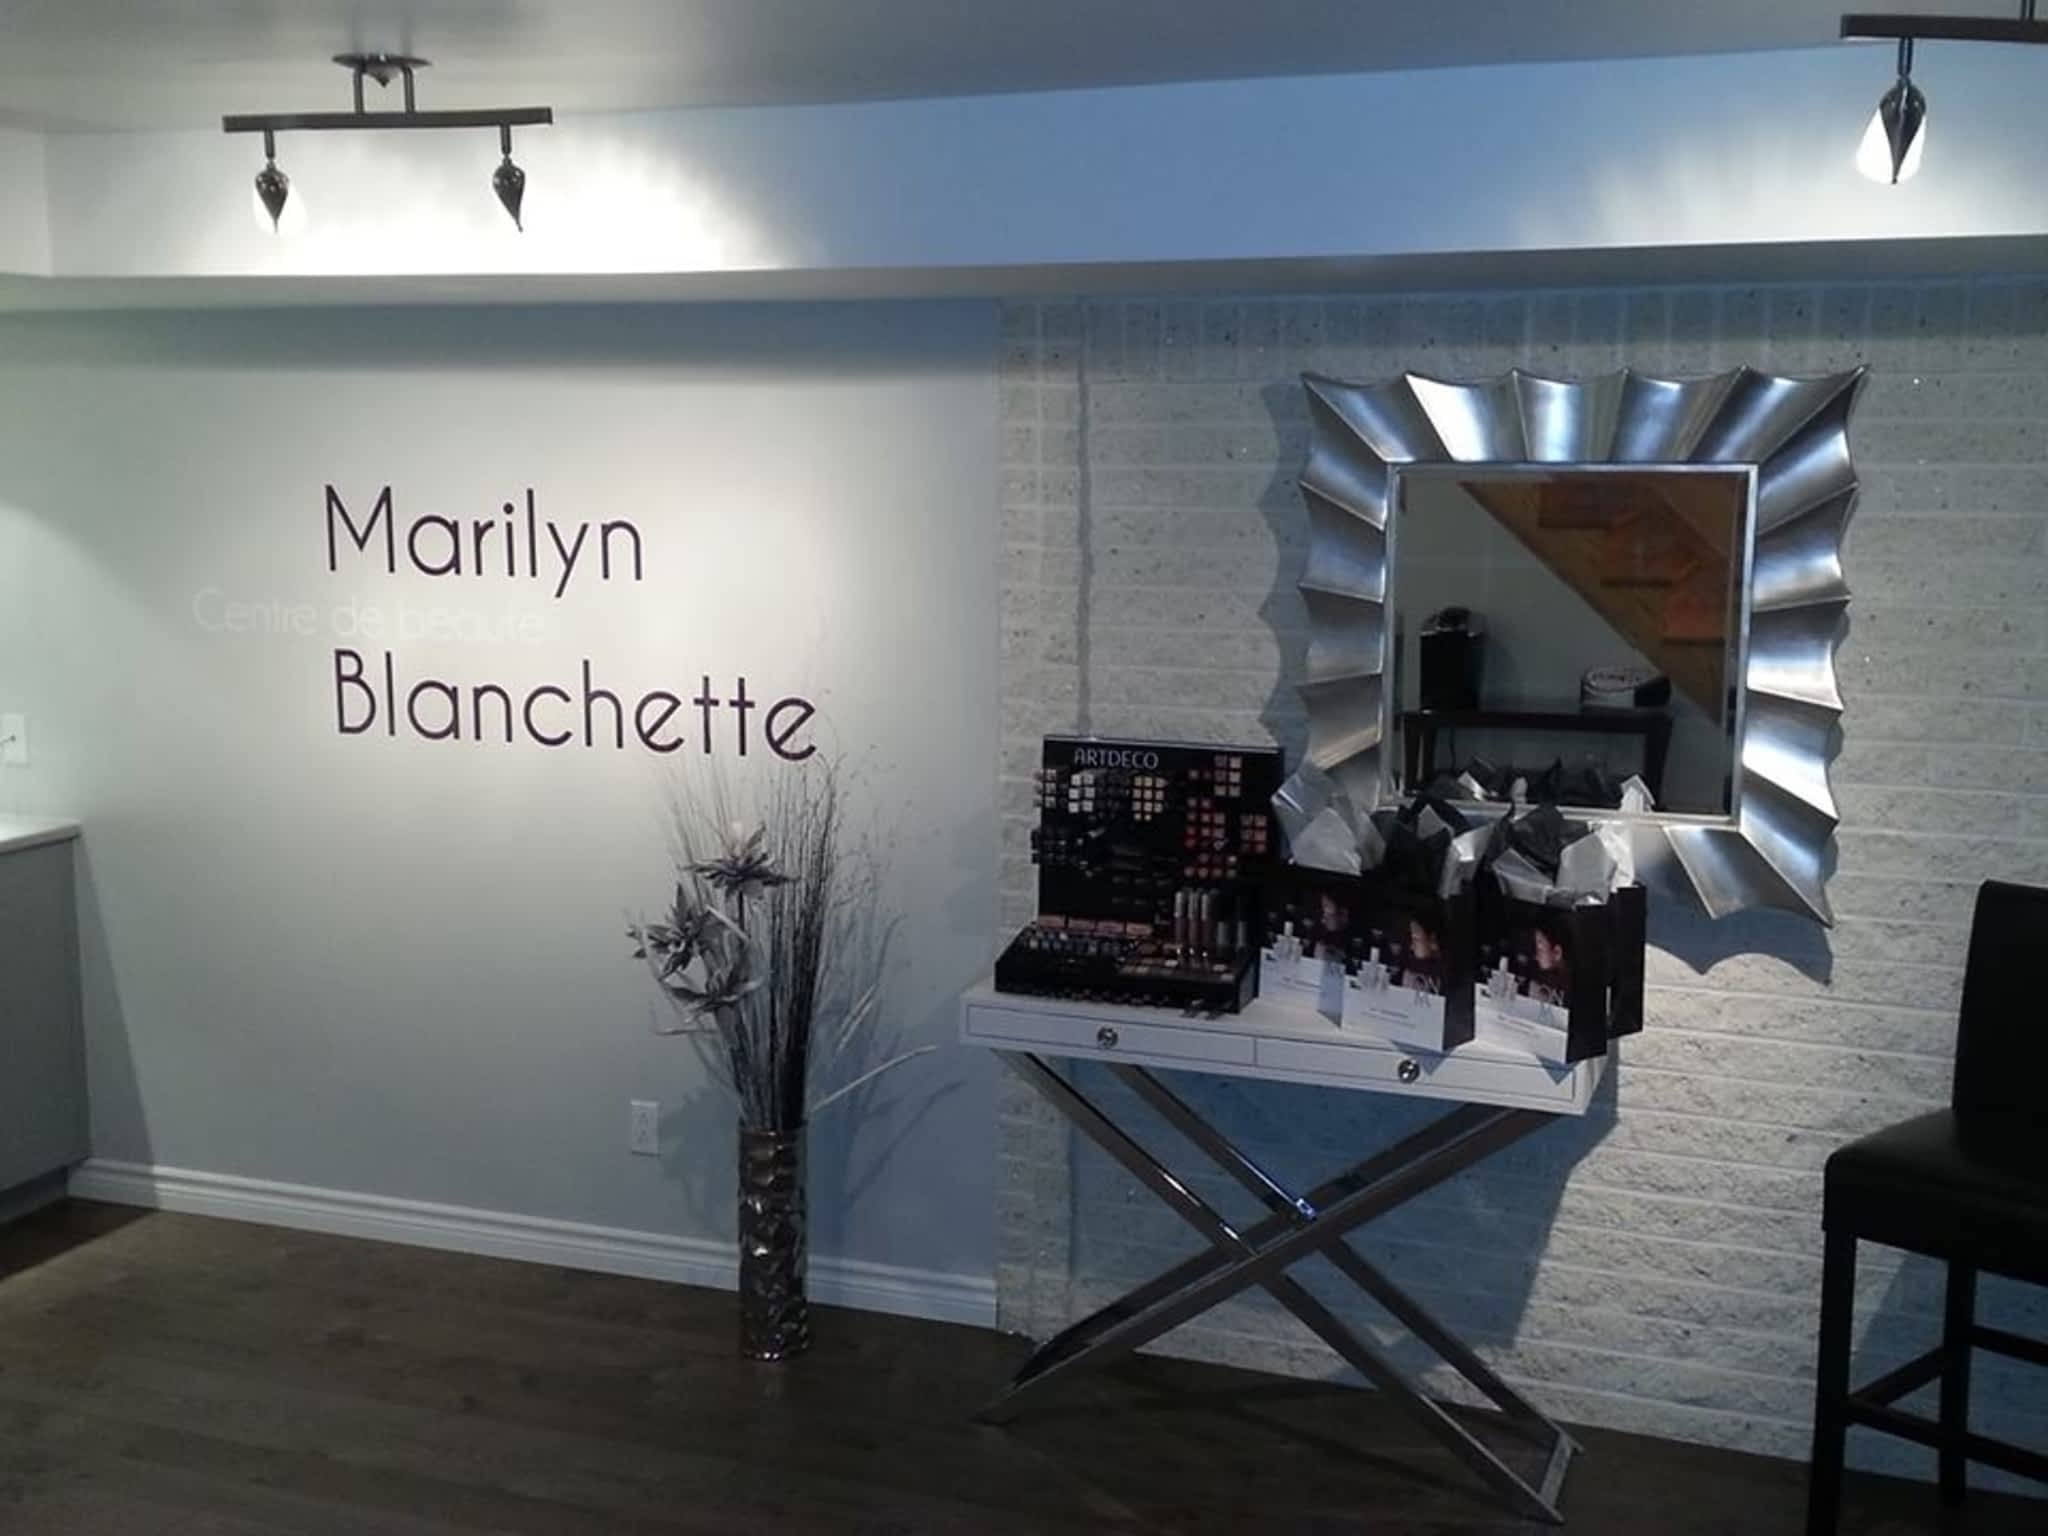 photo Centre De Beauté Marilyn Blanchette